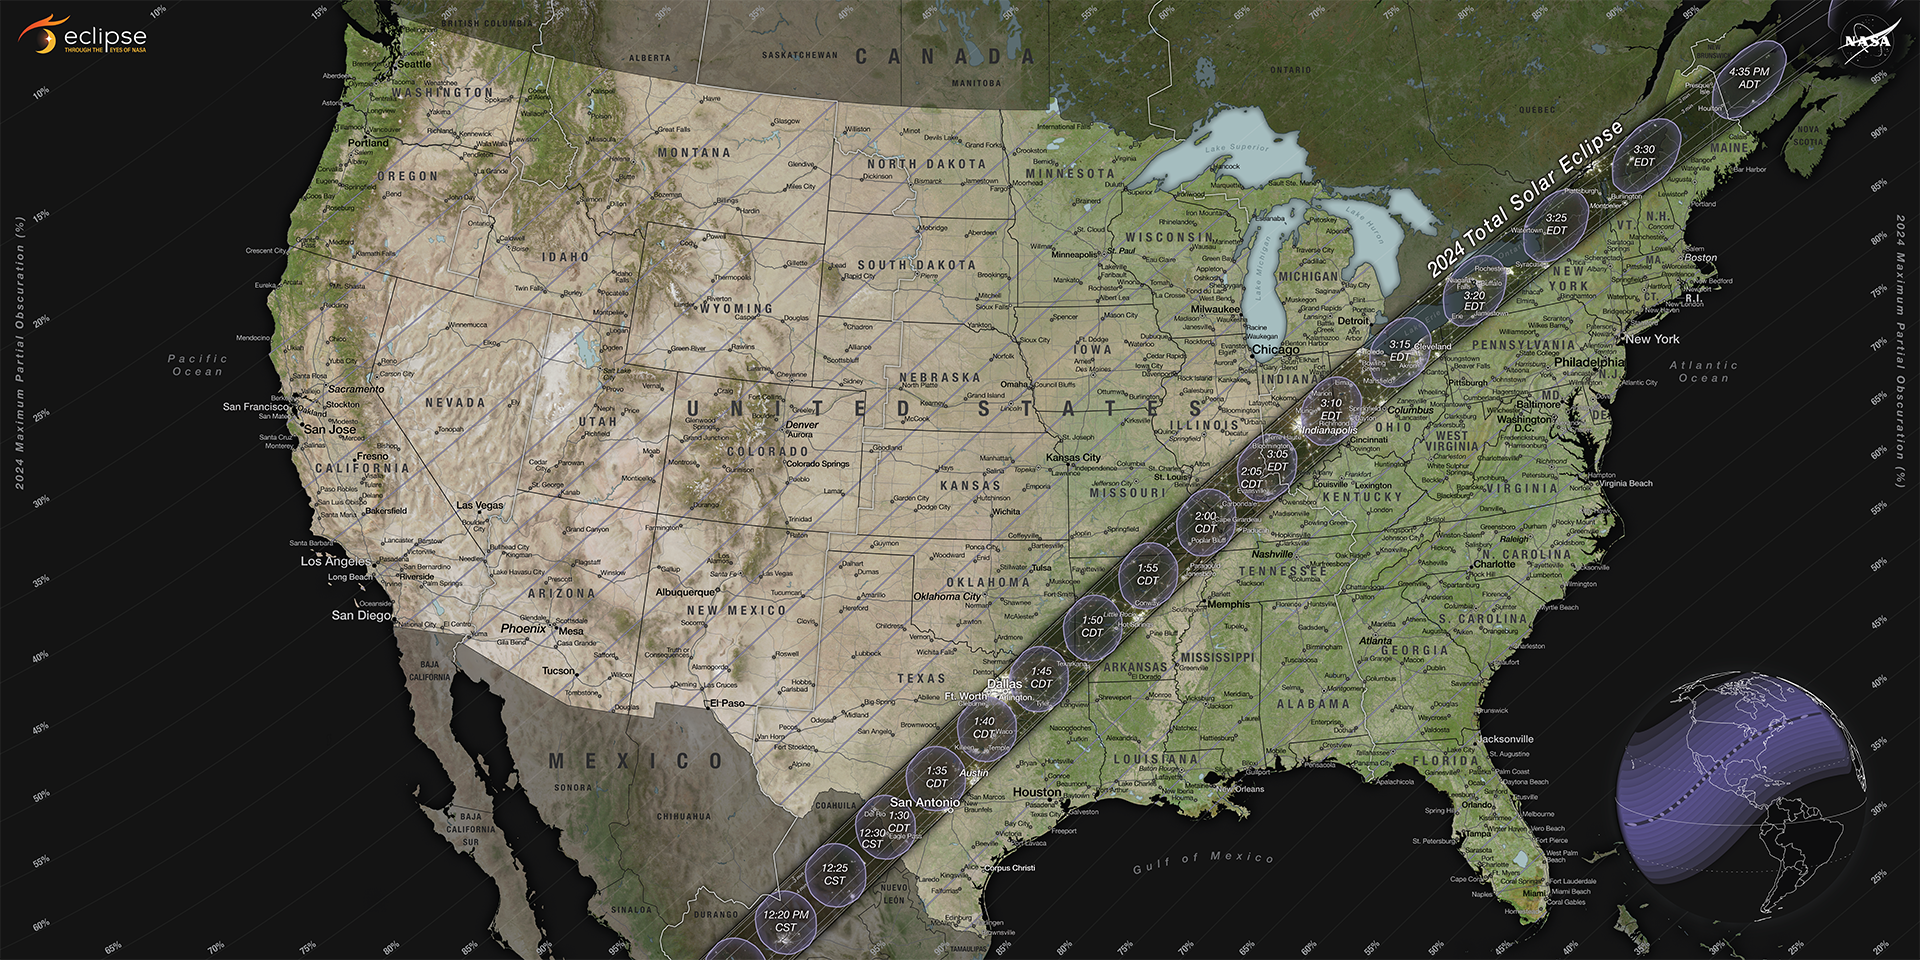 Mapa sąsiadujących Stanów Zjednoczonych pokazuje ścieżkę całkowitego zaćmienia słońca w 2024 r. rozciągającą się w wąskim paśmie od Teksasu do Maine.